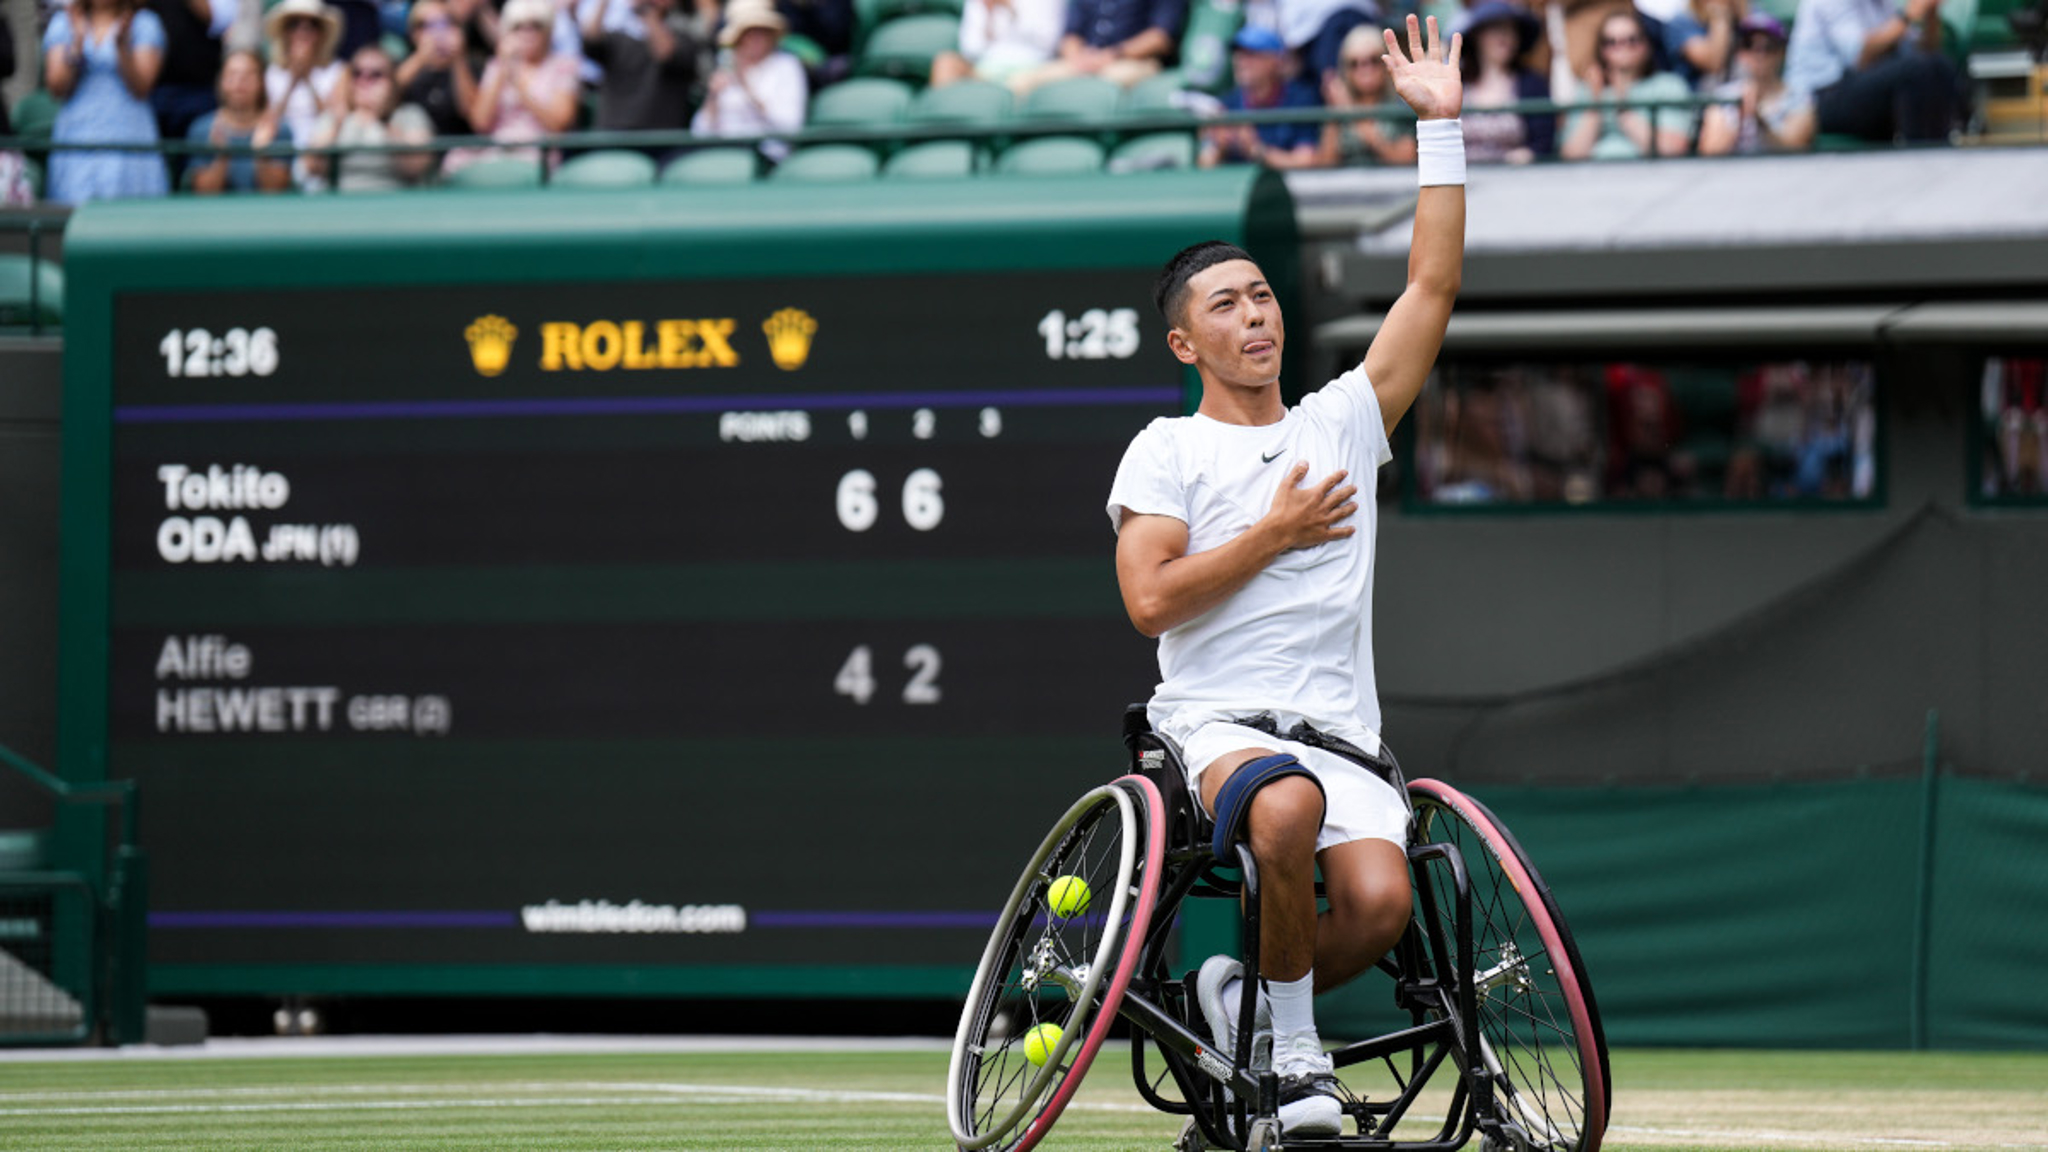 Japan's Oda, 17, wins Wimbledon wheelchair title | SuperSport